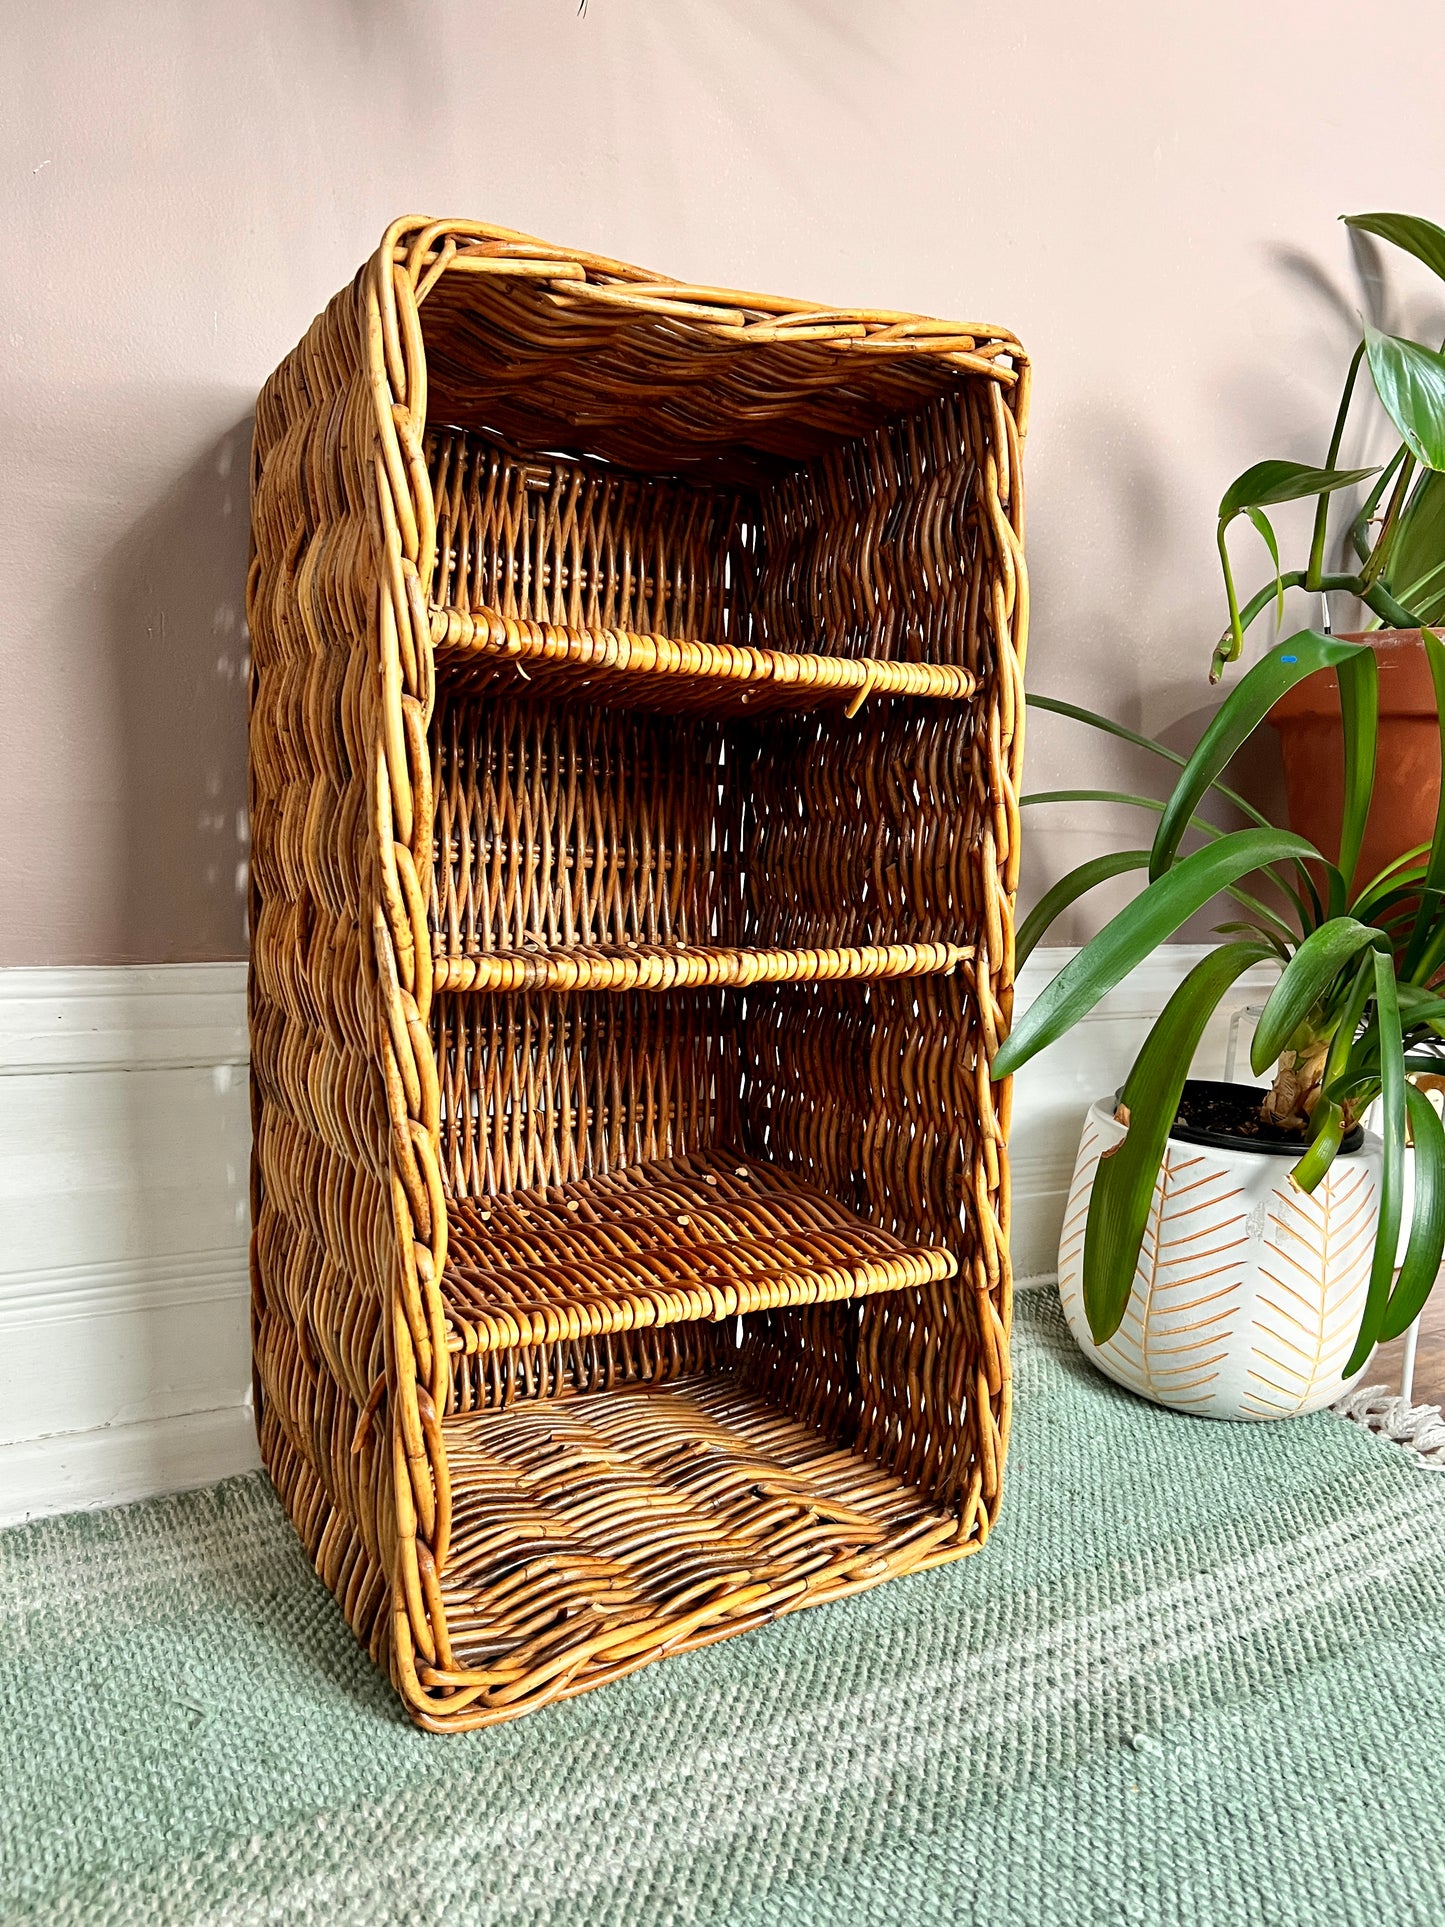 The Wilma Wicker Shelf Basket